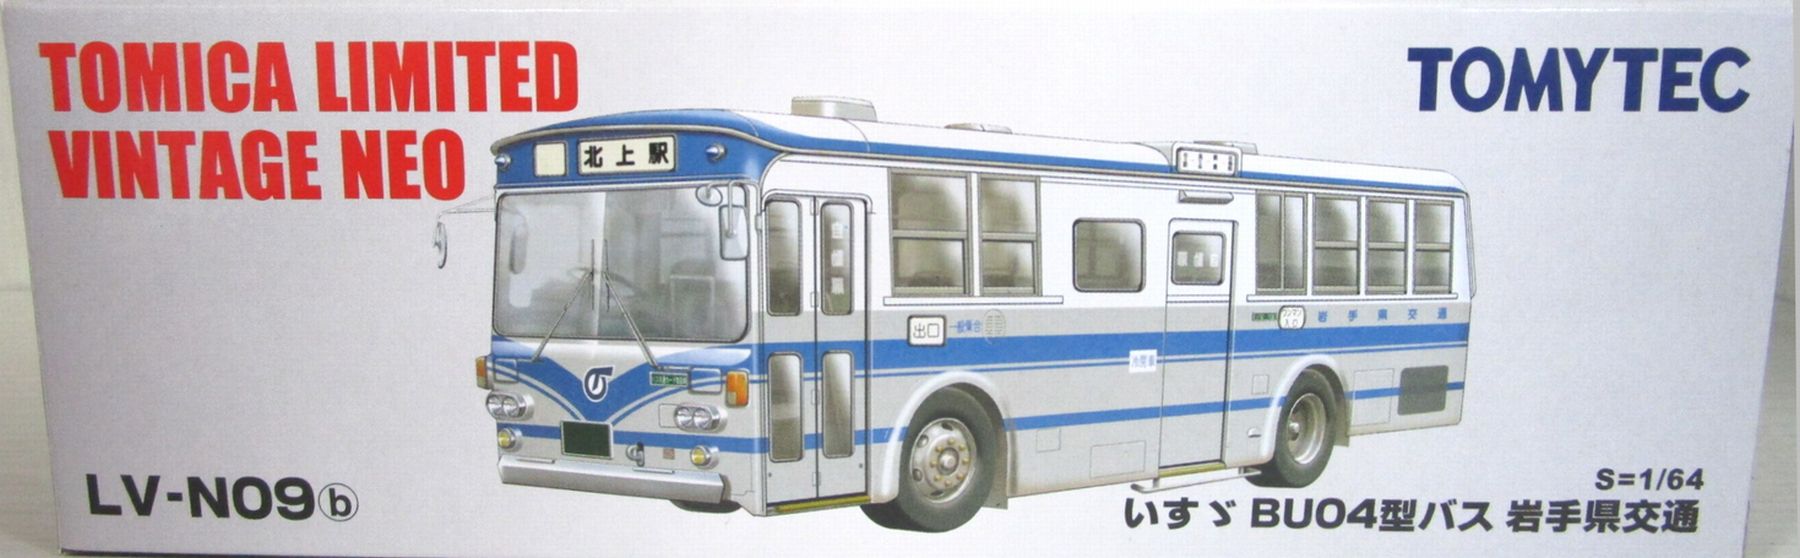 公式]TOY(トミカリミテッドヴィンテージNEO LV-N09b いすゞBU04型バス 